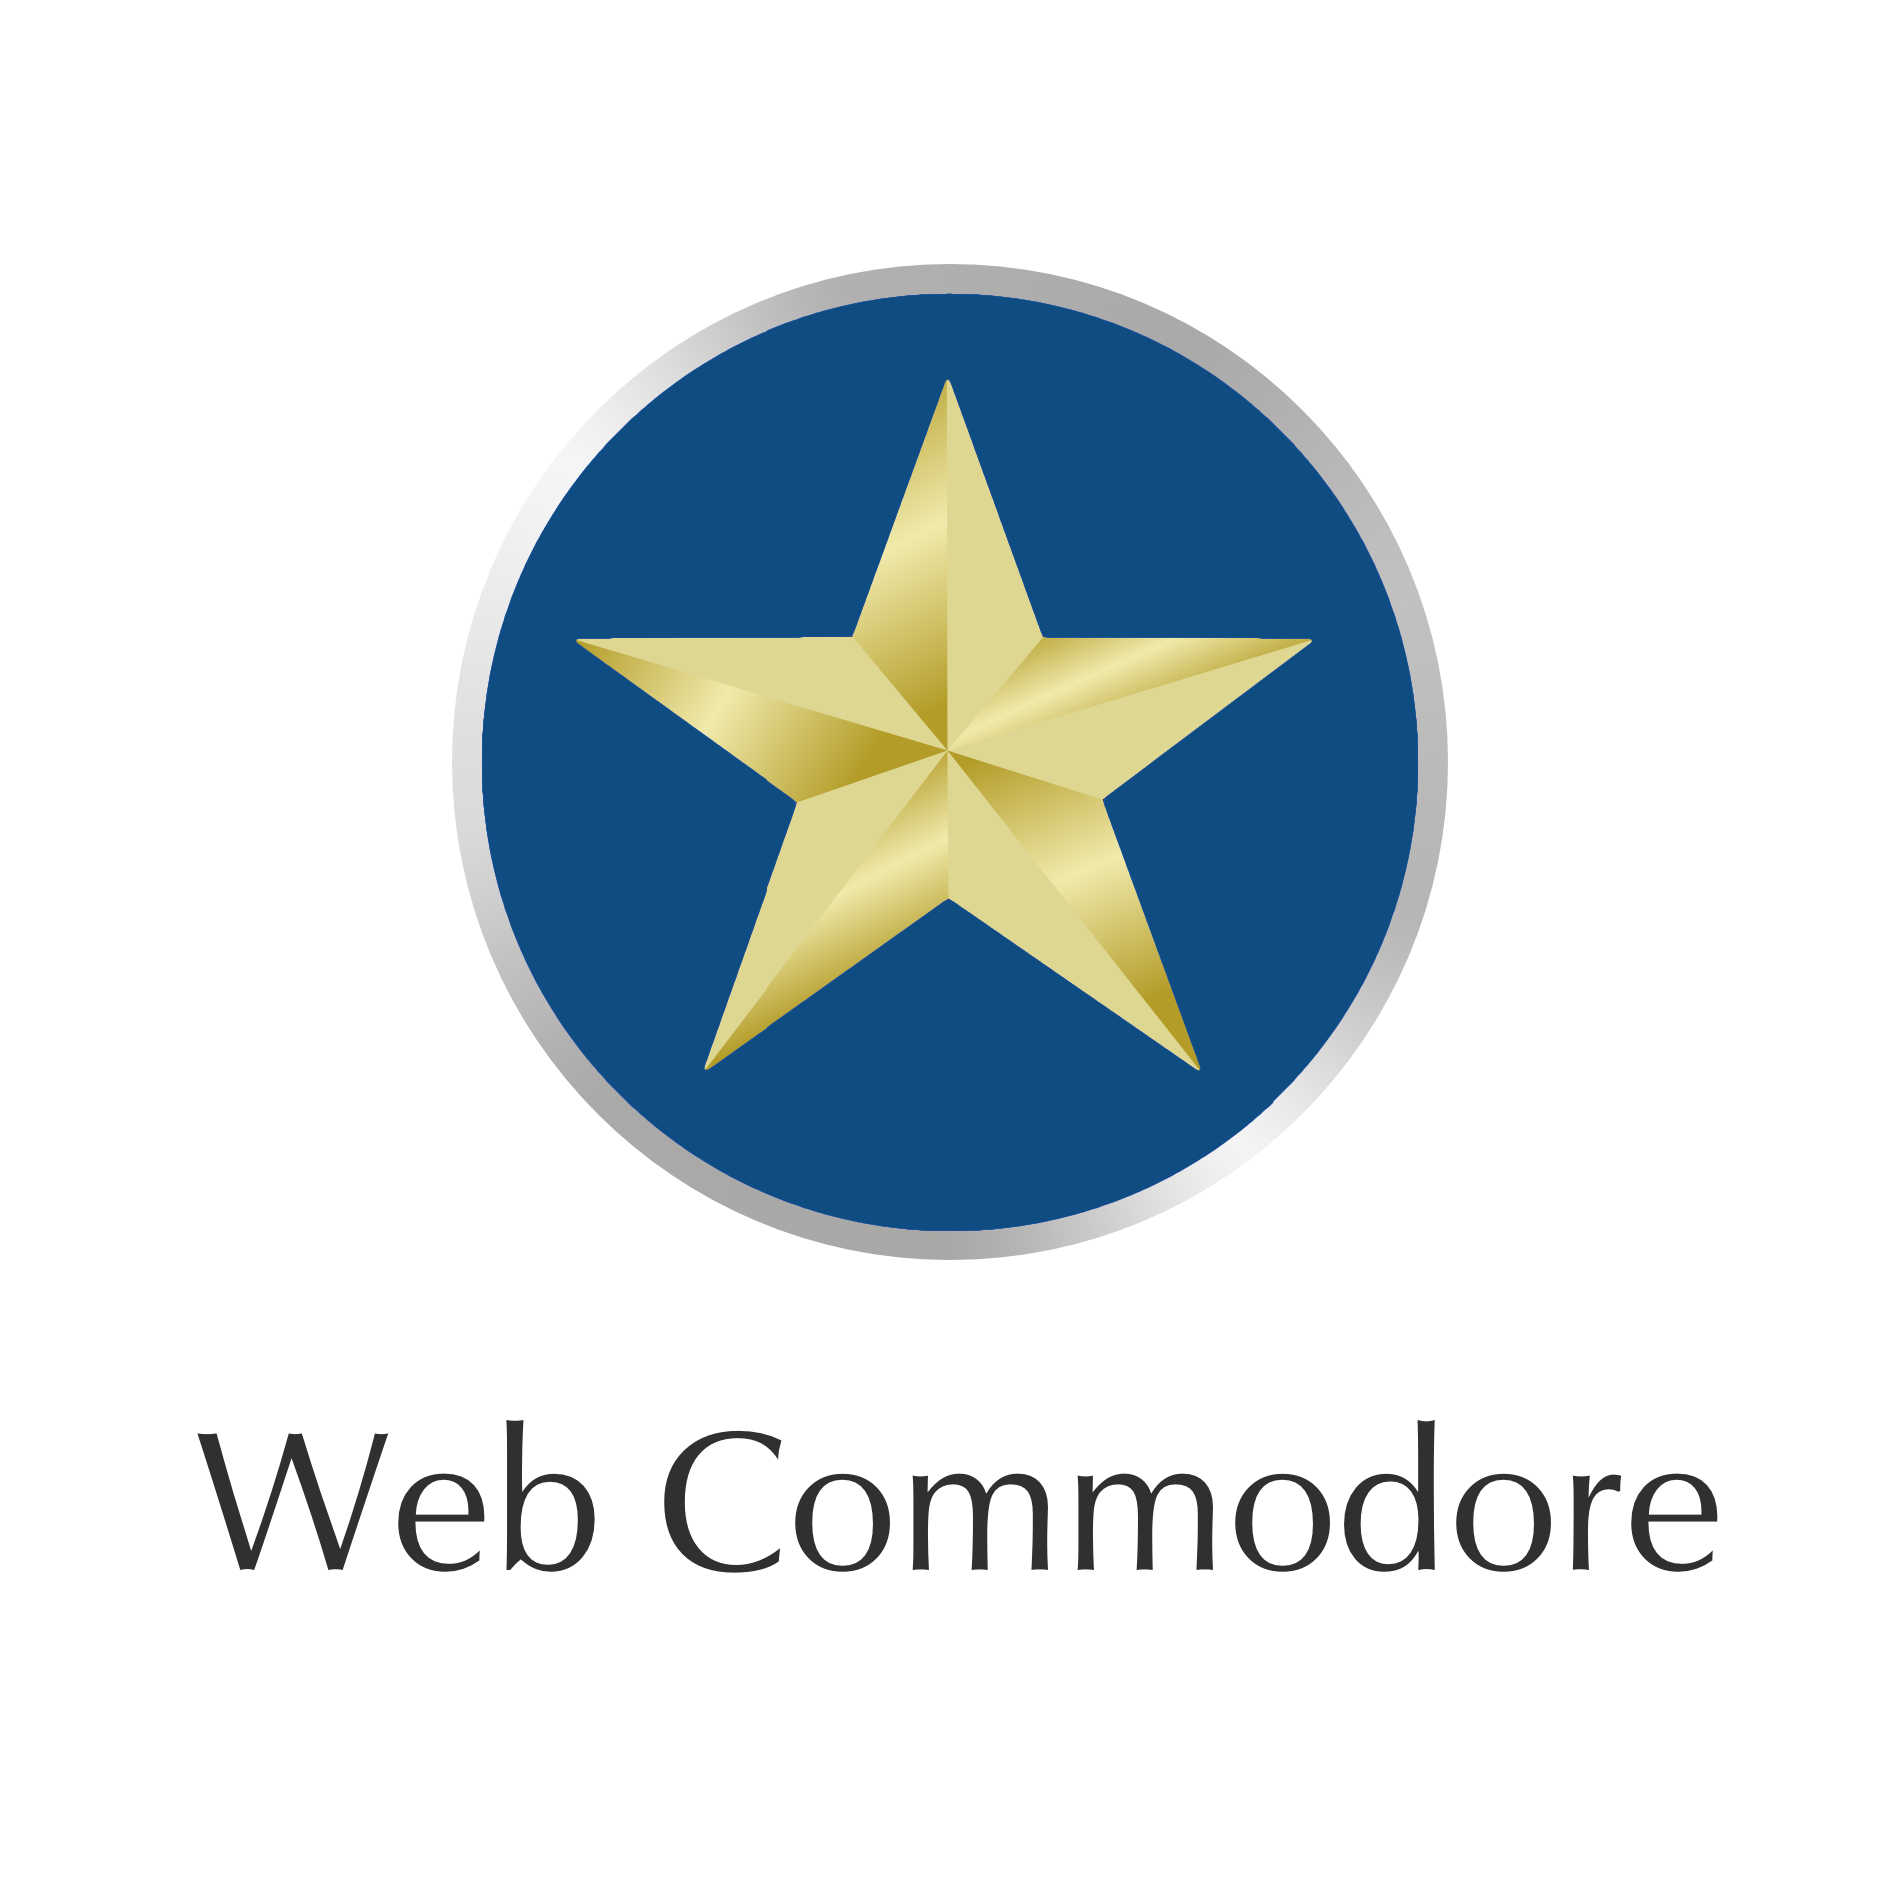 Web Commodore